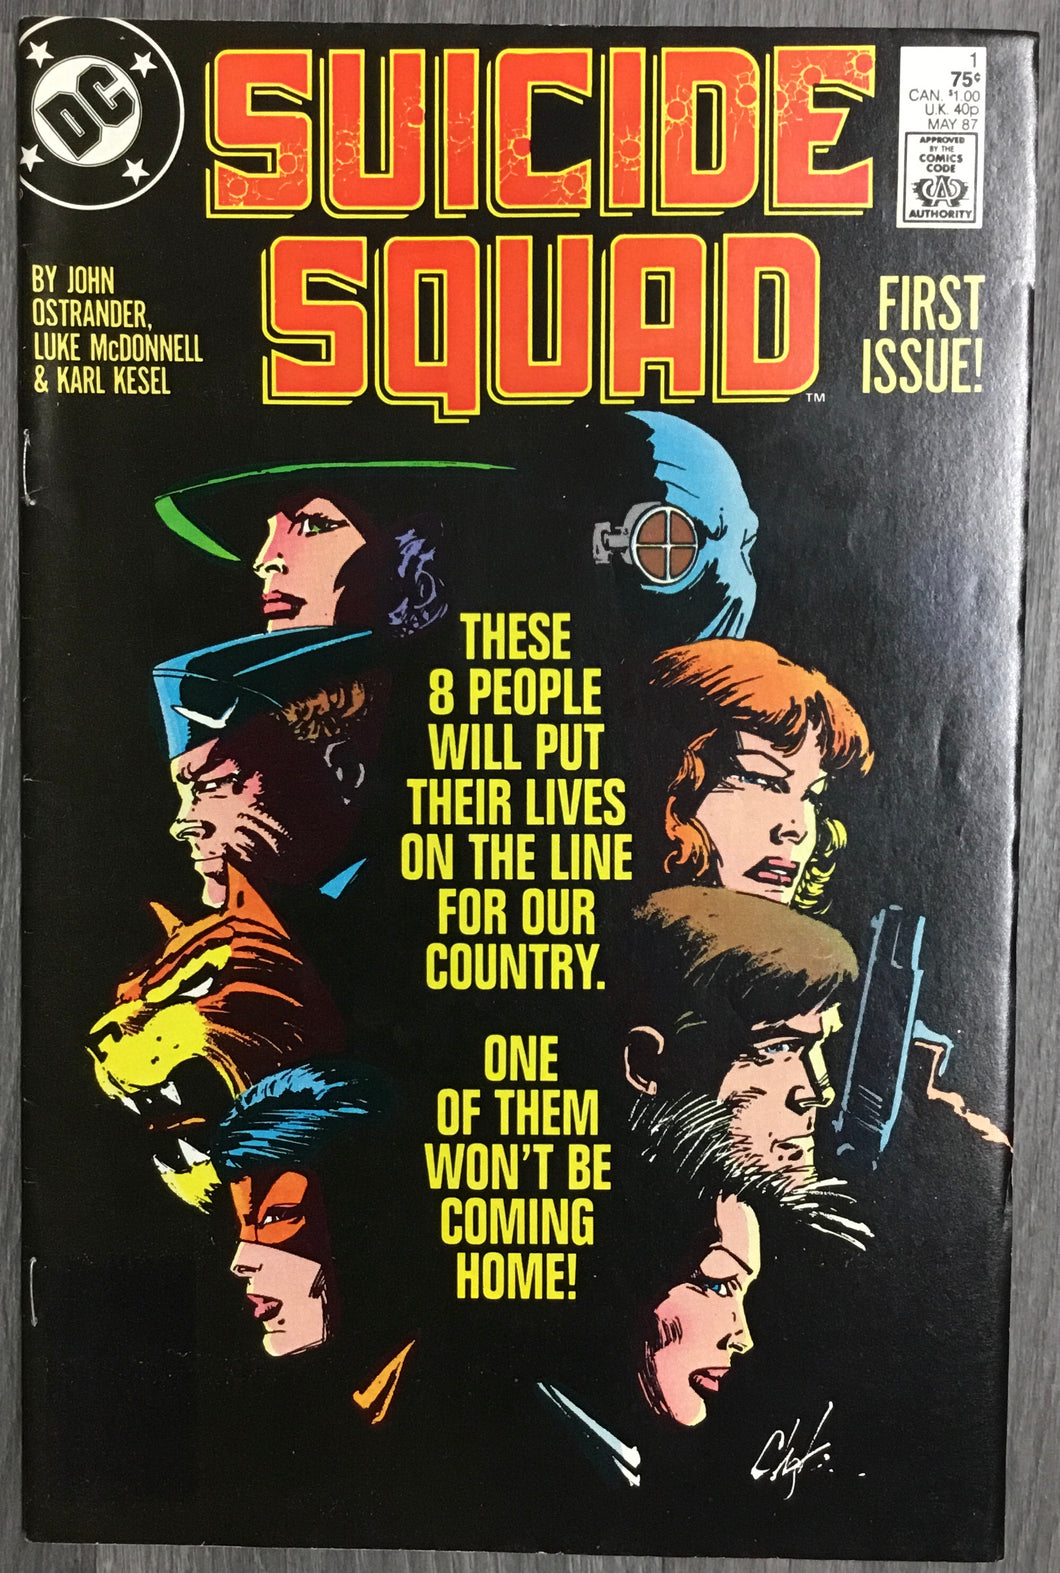 Suicide Squad No. #1 1987 DC Comics